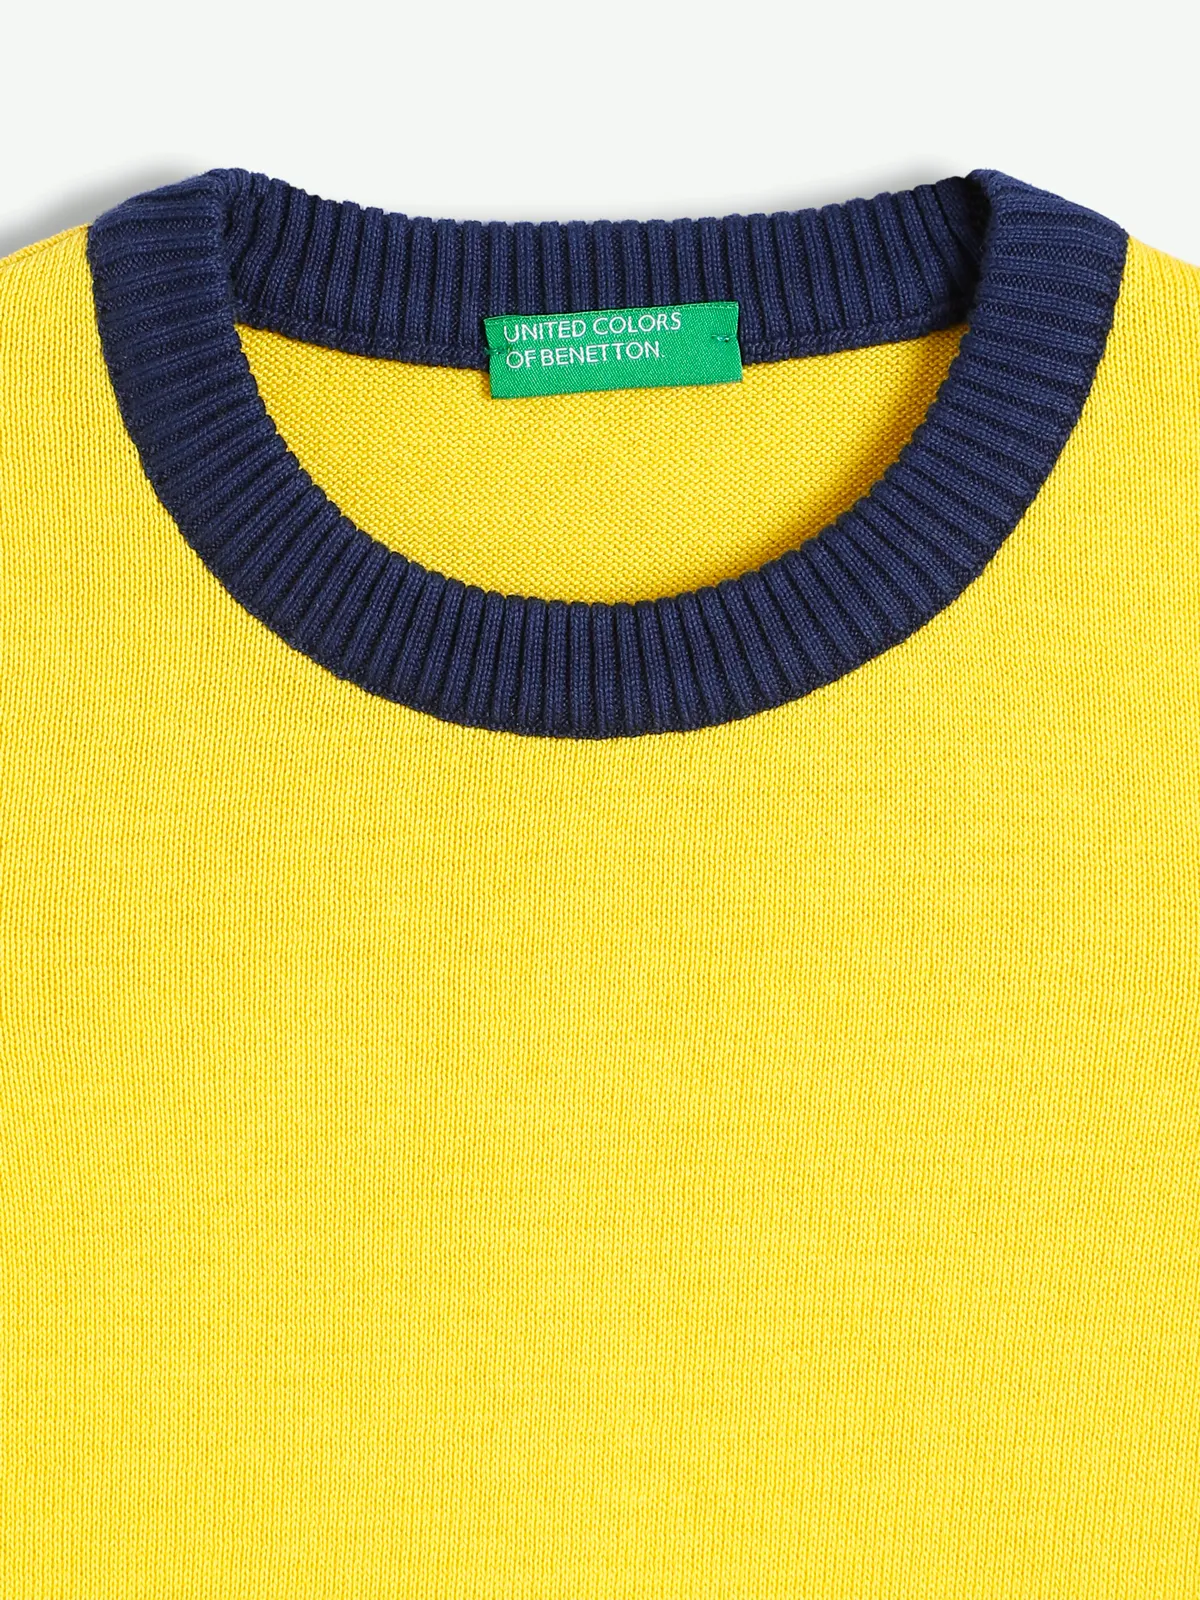 UCB knitted bright yellow sweatshirt